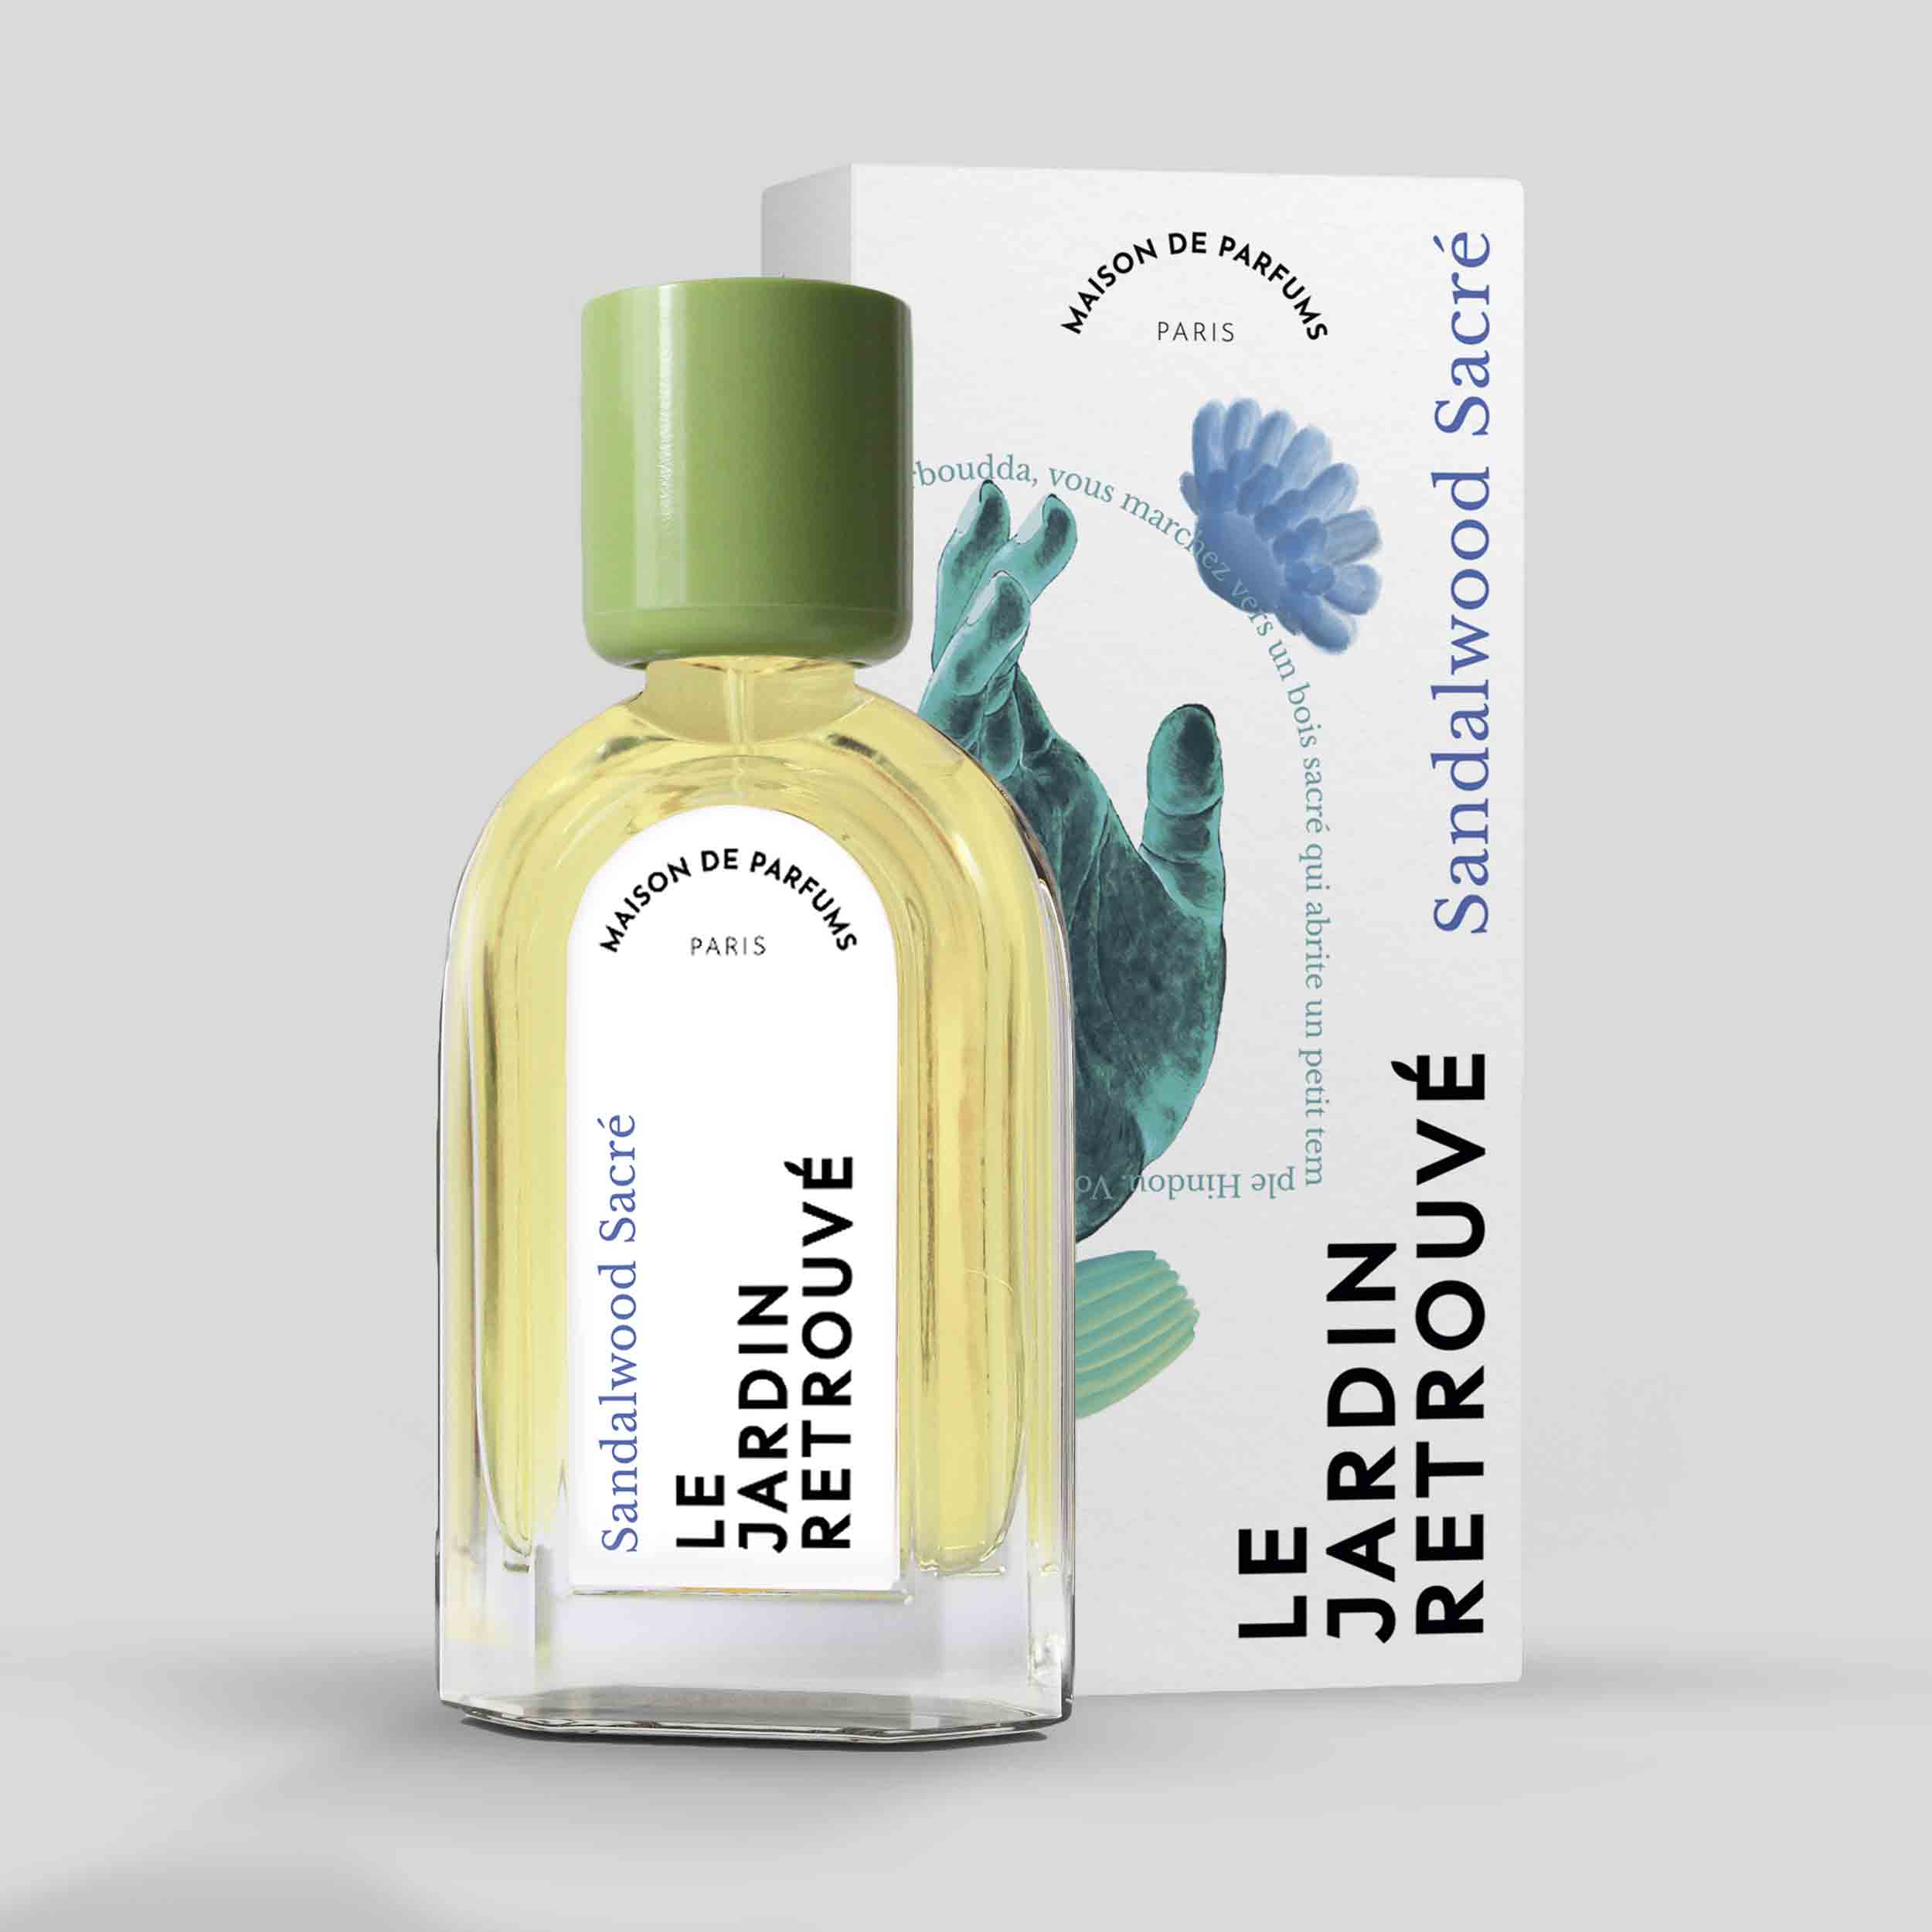 Sandalwood Sacré Eau de Parfum 50ml Bottle and Box by Le Jardin Retrouvé